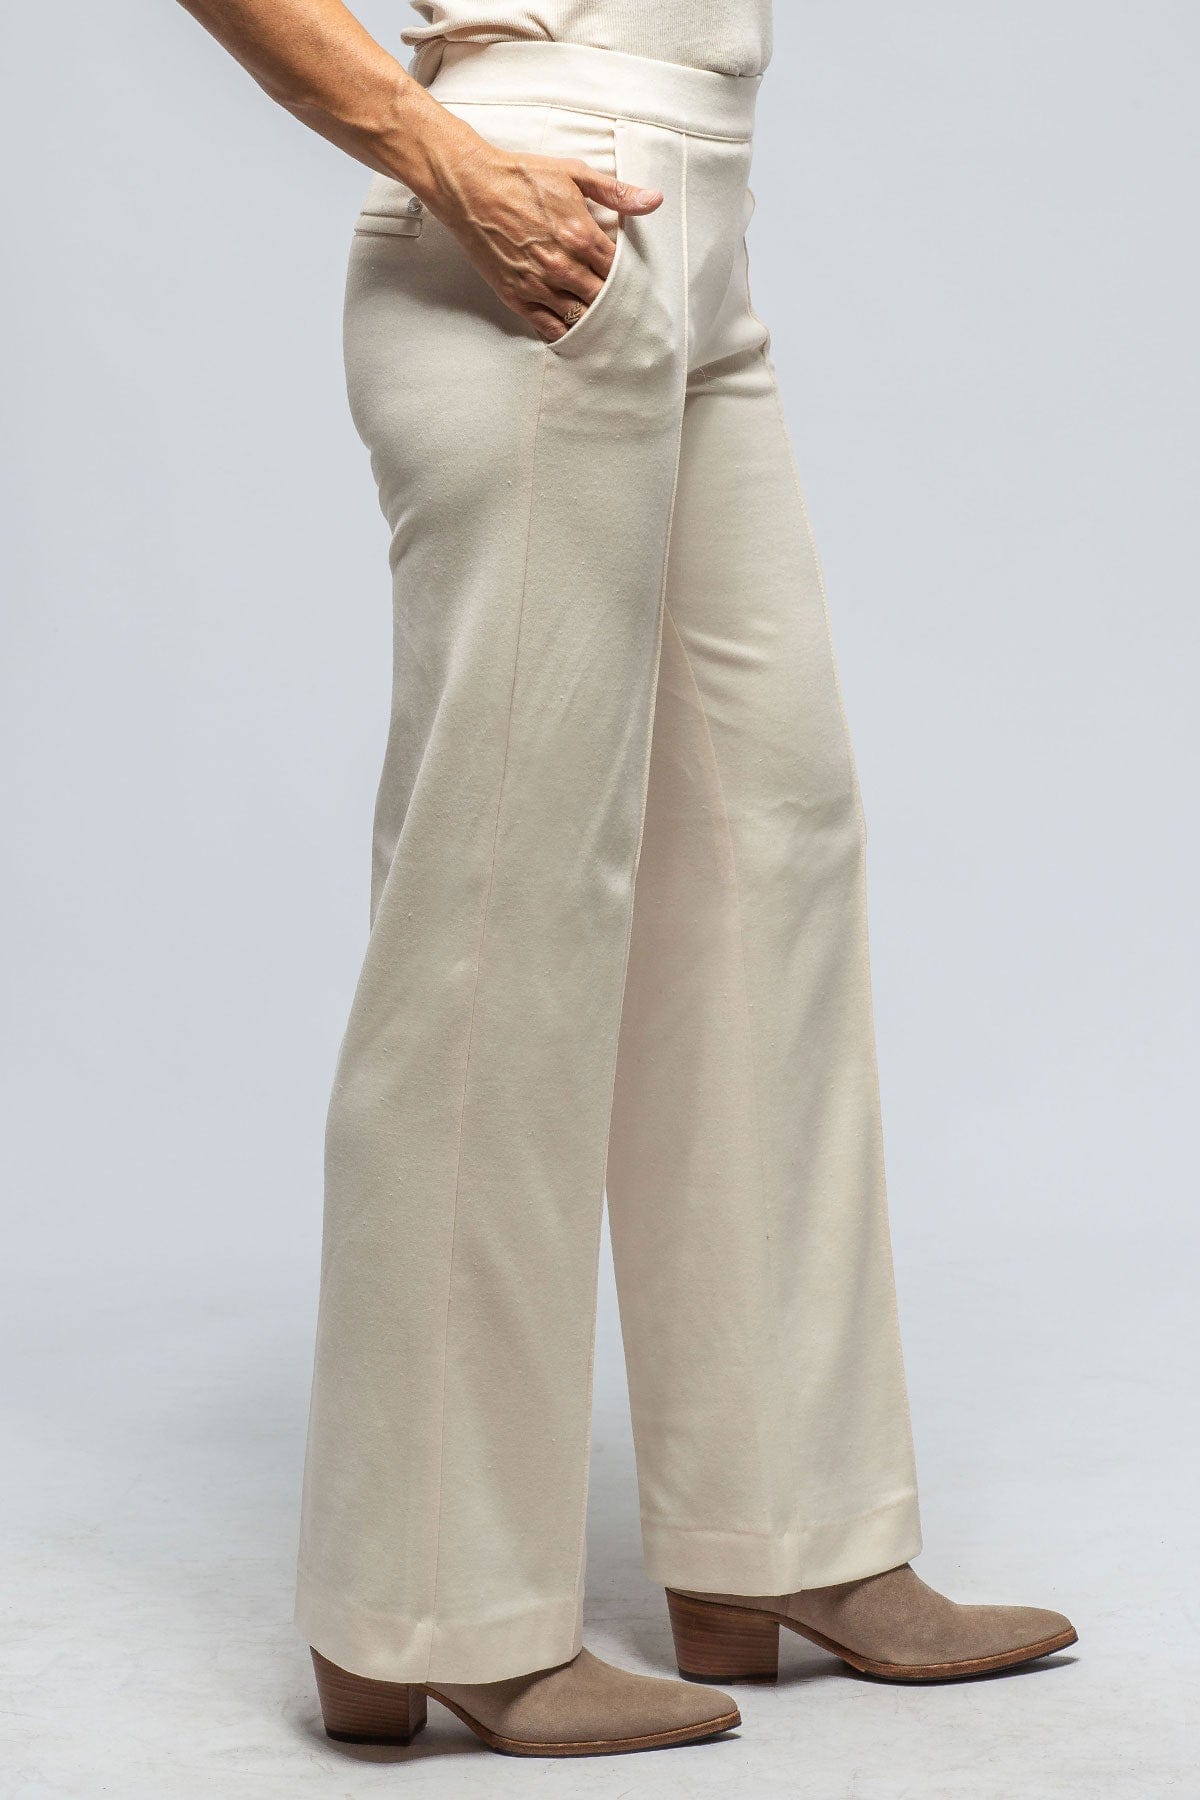 MAC Chiara Knit Trouser in Vintage White - AXEL'S